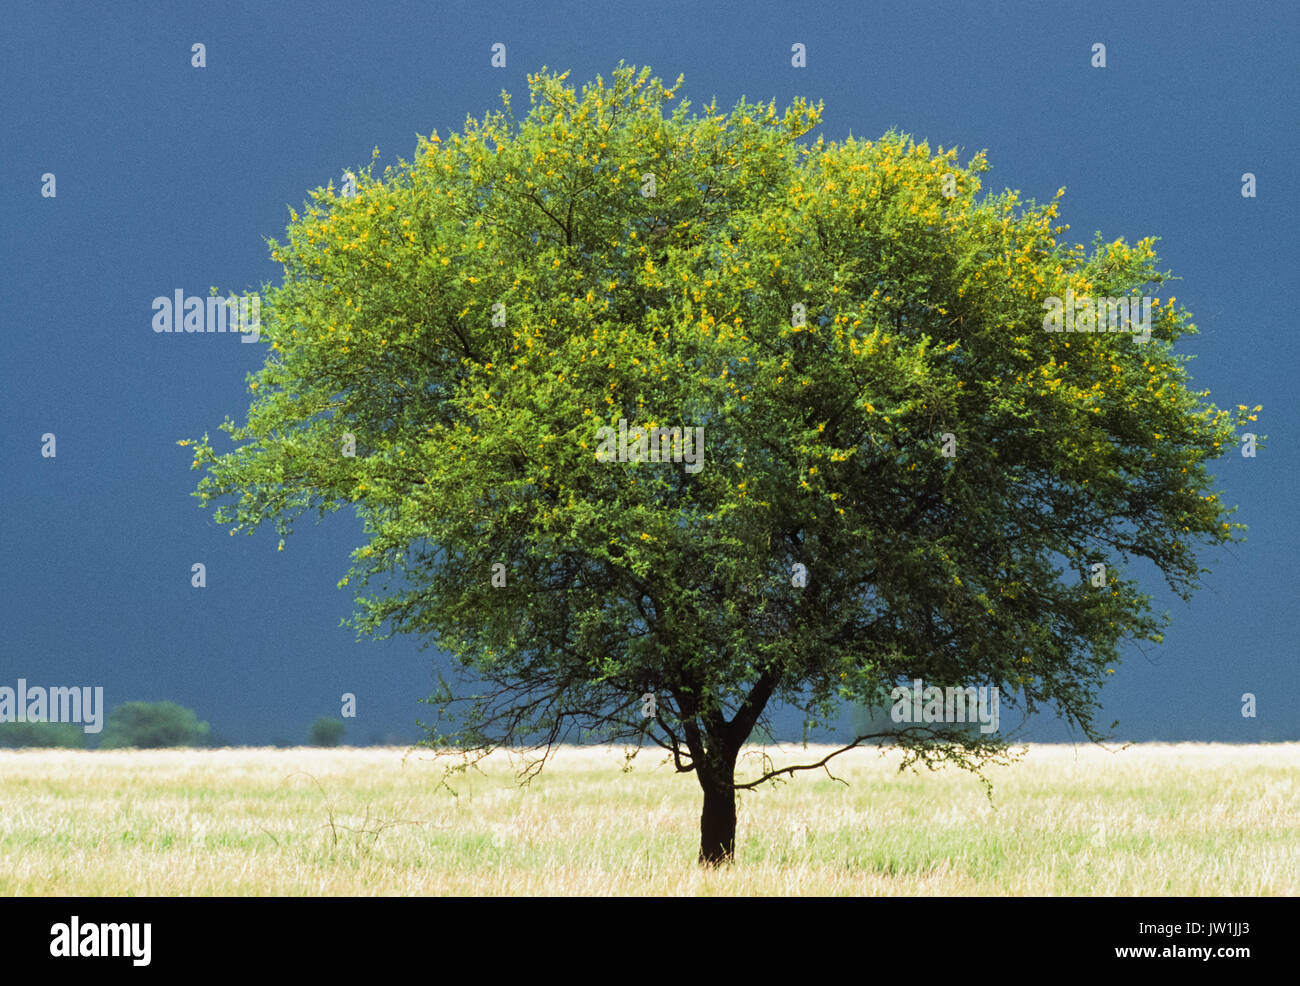 Acacia arbre qui pousse dans les Prairies, parc national, Velavadar Blackbuck, Gujarat, Inde Banque D'Images